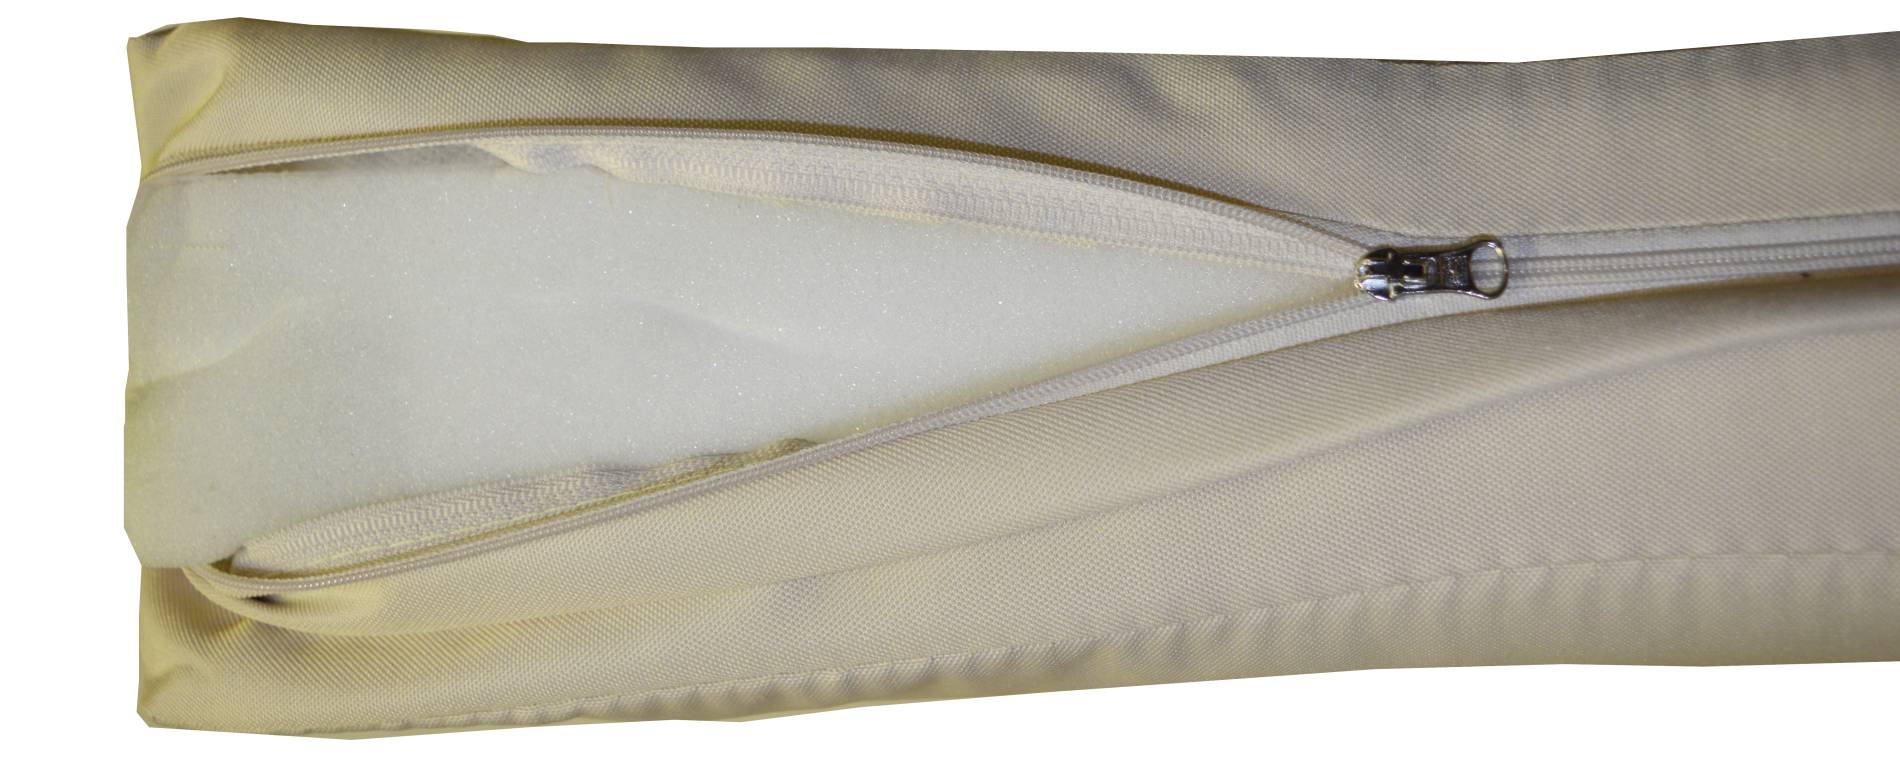 Premium Schaukelauflage Kissen mit Reissverschlüssen für Hollywoodschaukel wasserabweisend in beige 2-teilig